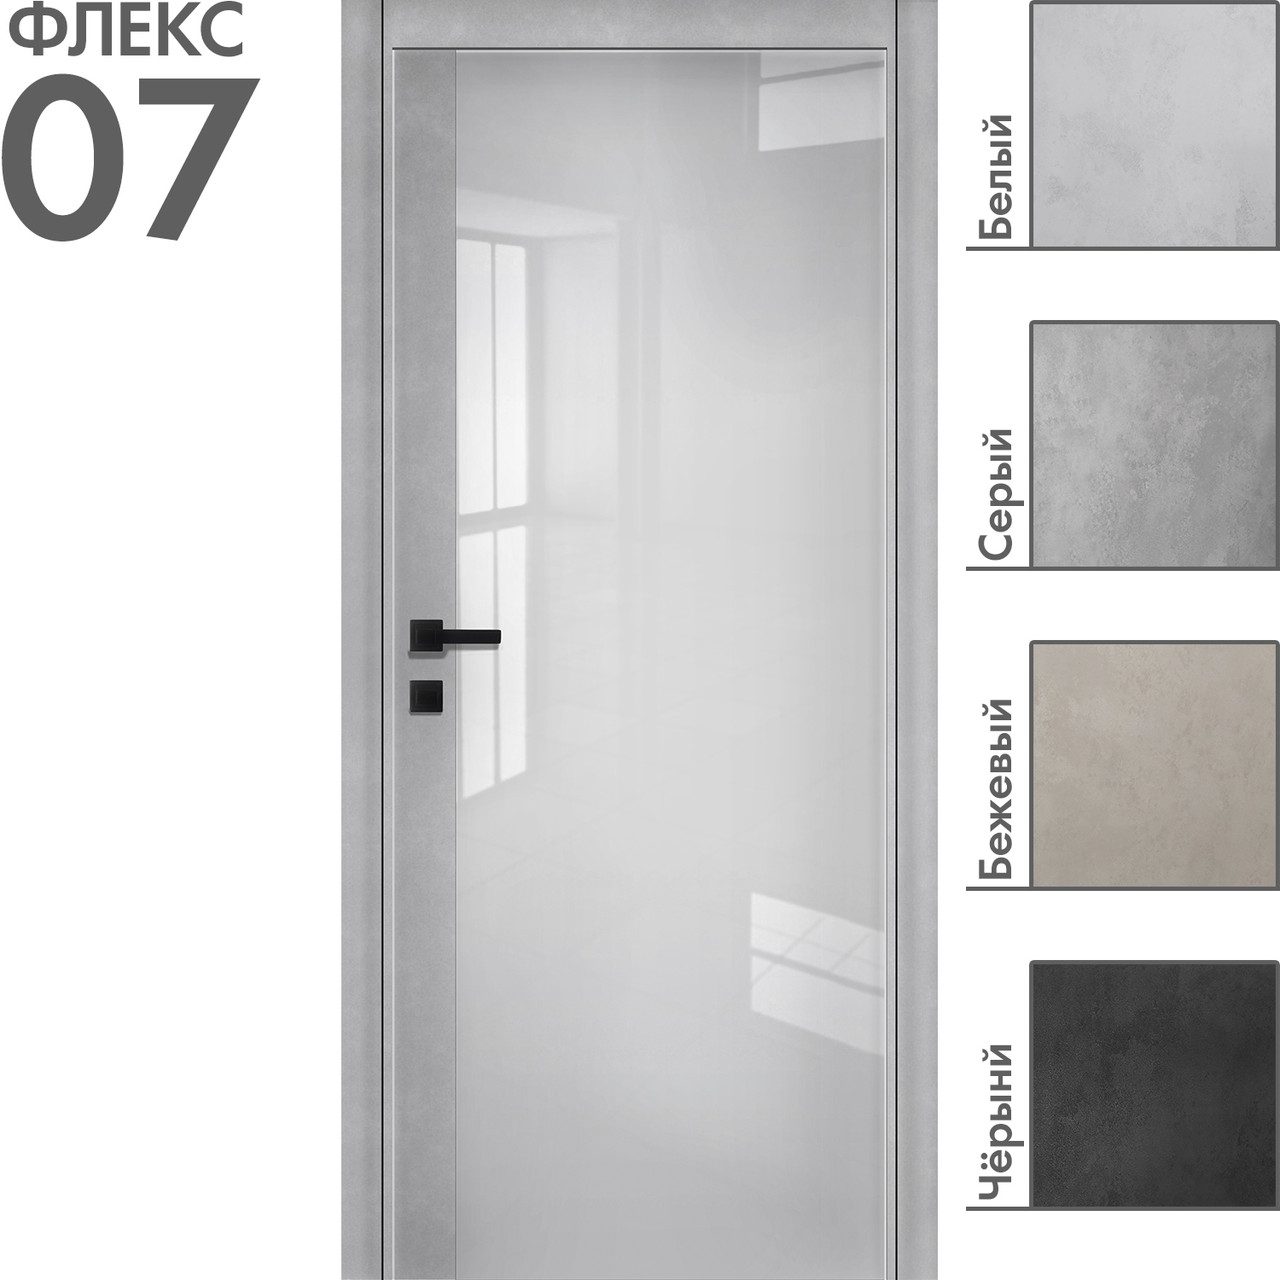 Межкомнатная дверь "ФЛЕКС" 07 (Цвета - Белый; Серый; Бежевый; Чёрный)